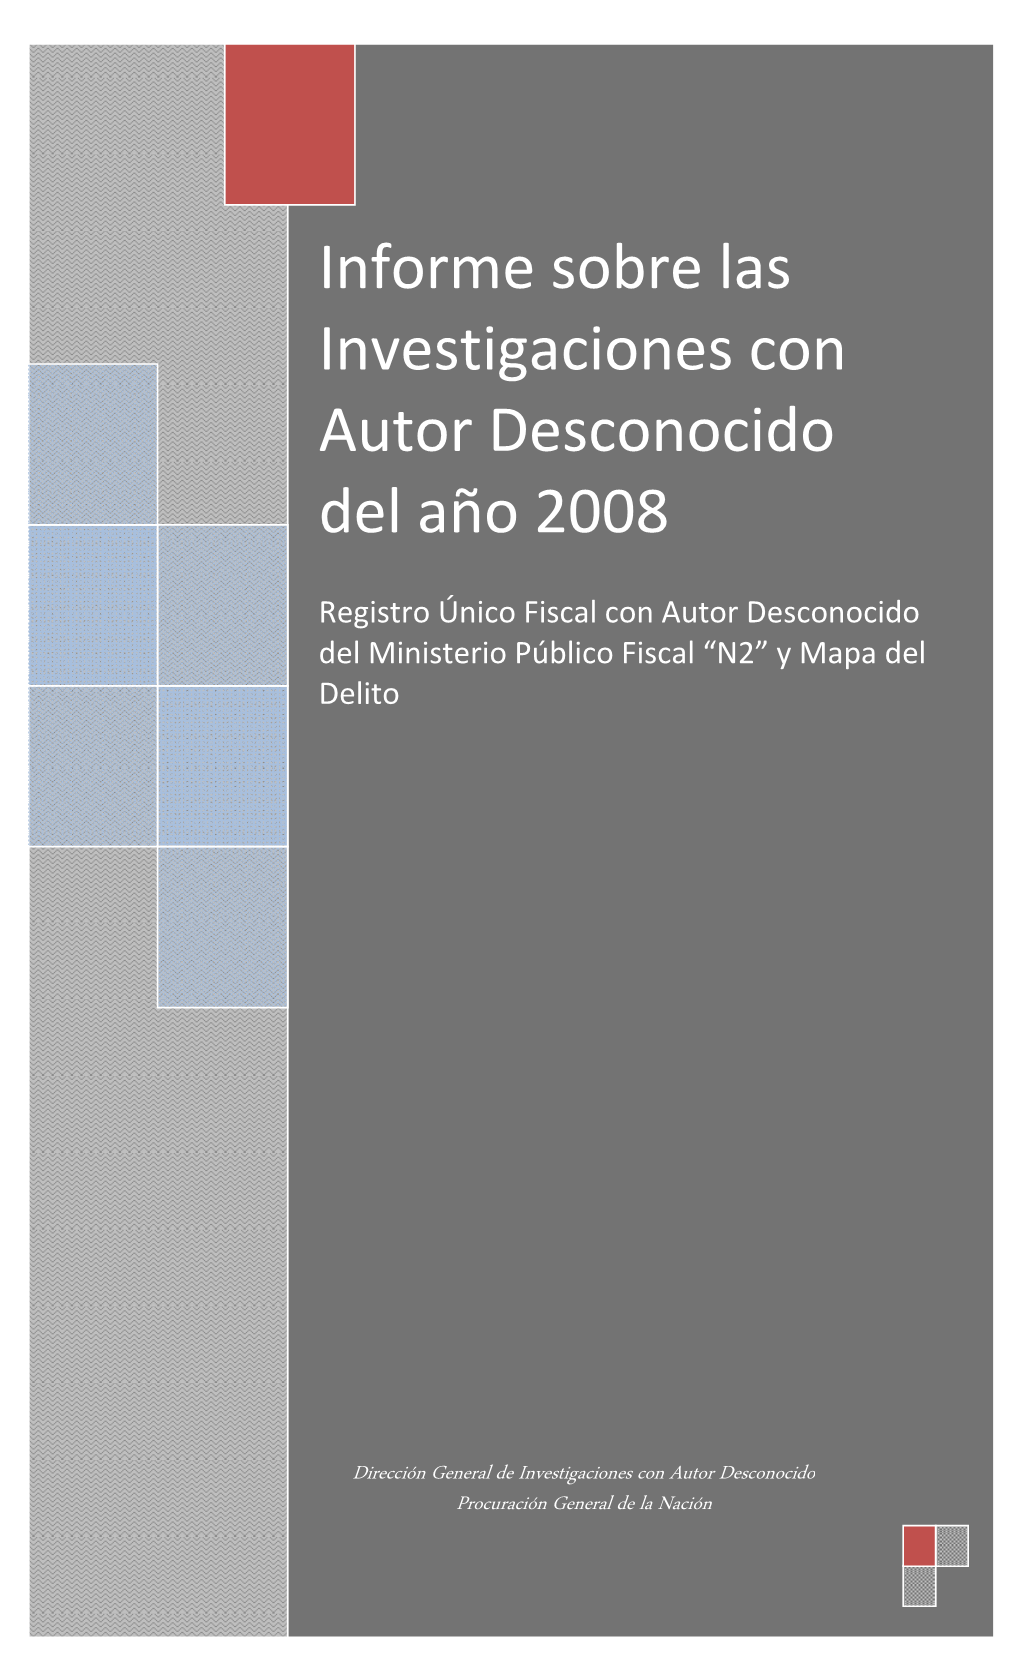 Informe Sobre Las Investigaciones Con Autor Desconocido Del Año 2008